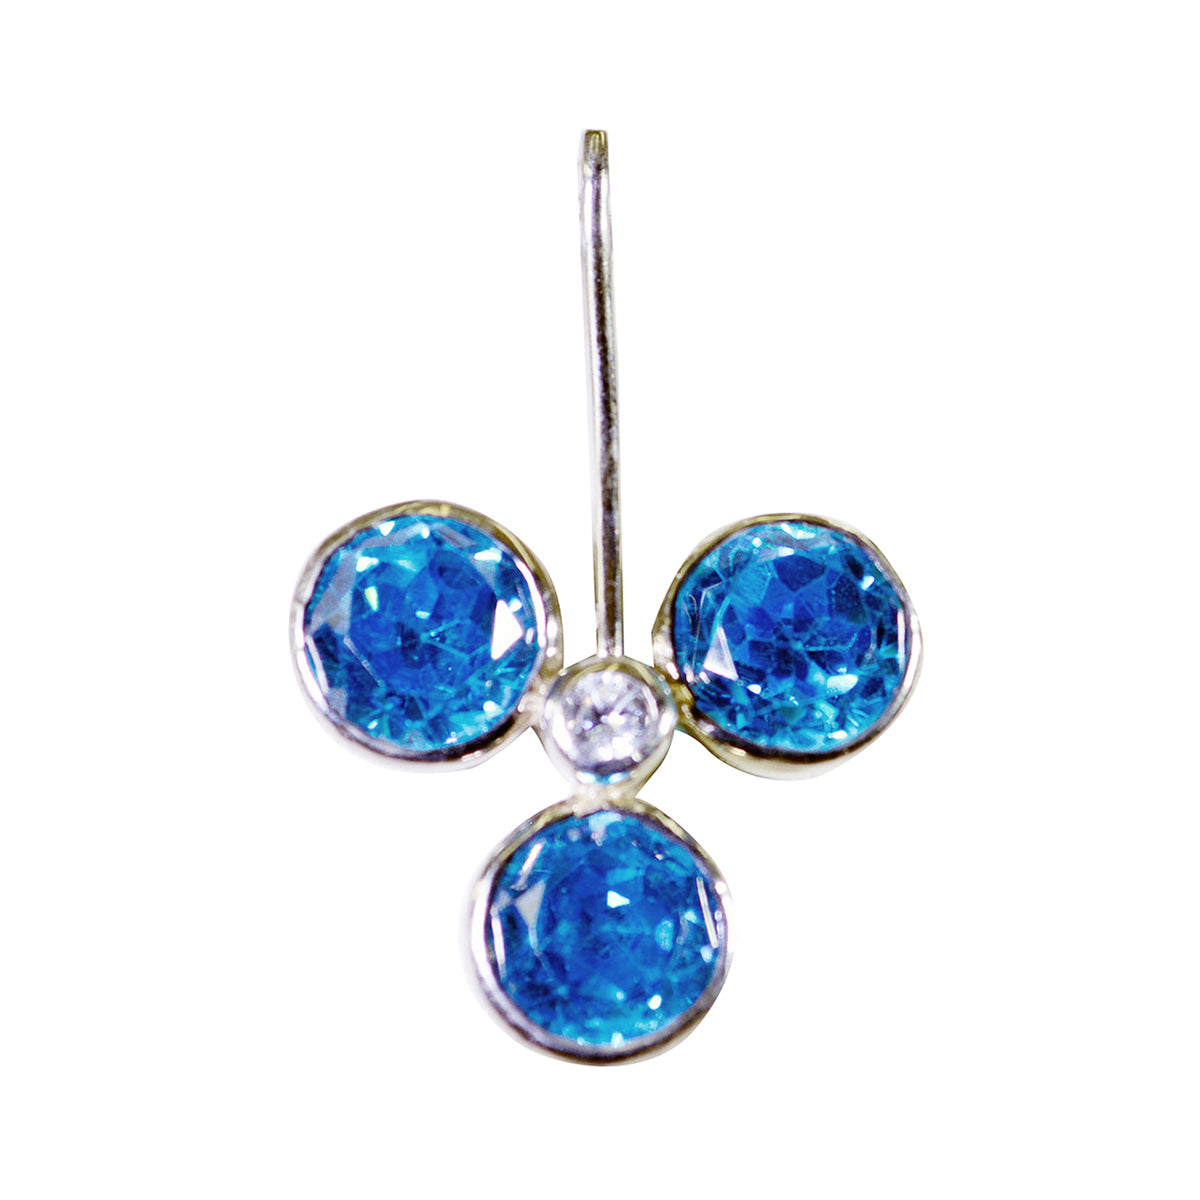 Riyo aantrekkelijke edelsteen rond gefacetteerd blauw blauw topaas 1034 sterling zilveren hanger cadeau voor goede vrijdag